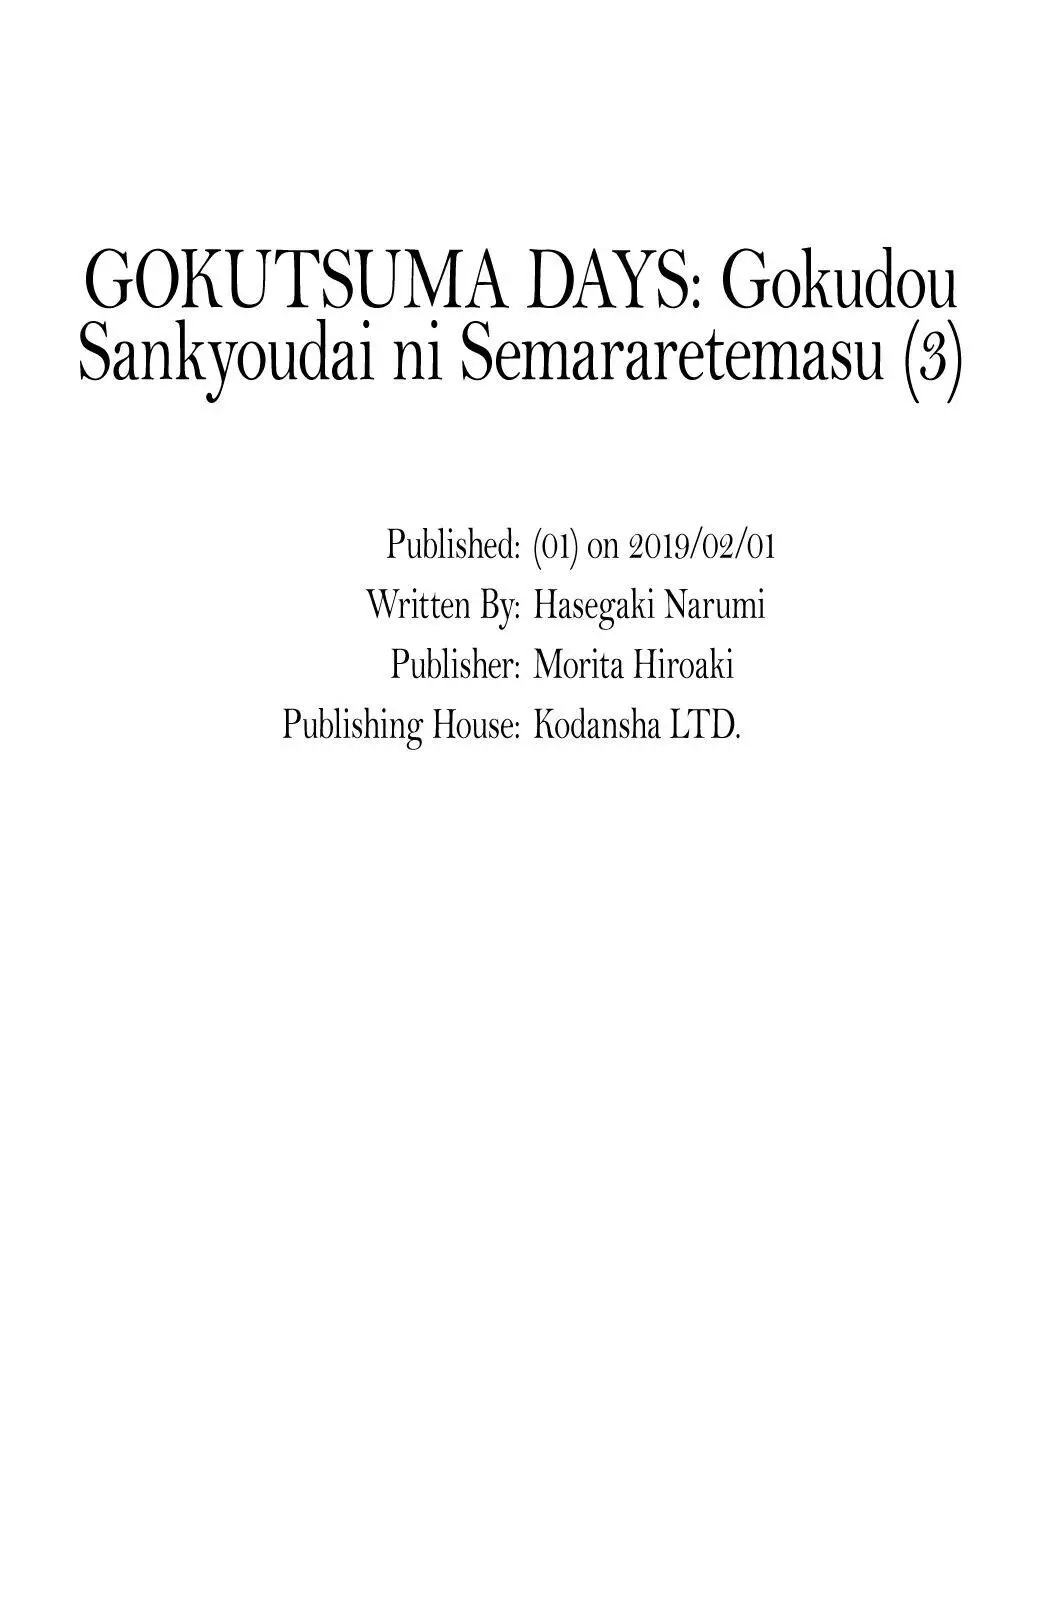 Gokutsuma Days: Gokudou Sankyoudai Ni Semaretemasu - 7 page 30-62061695